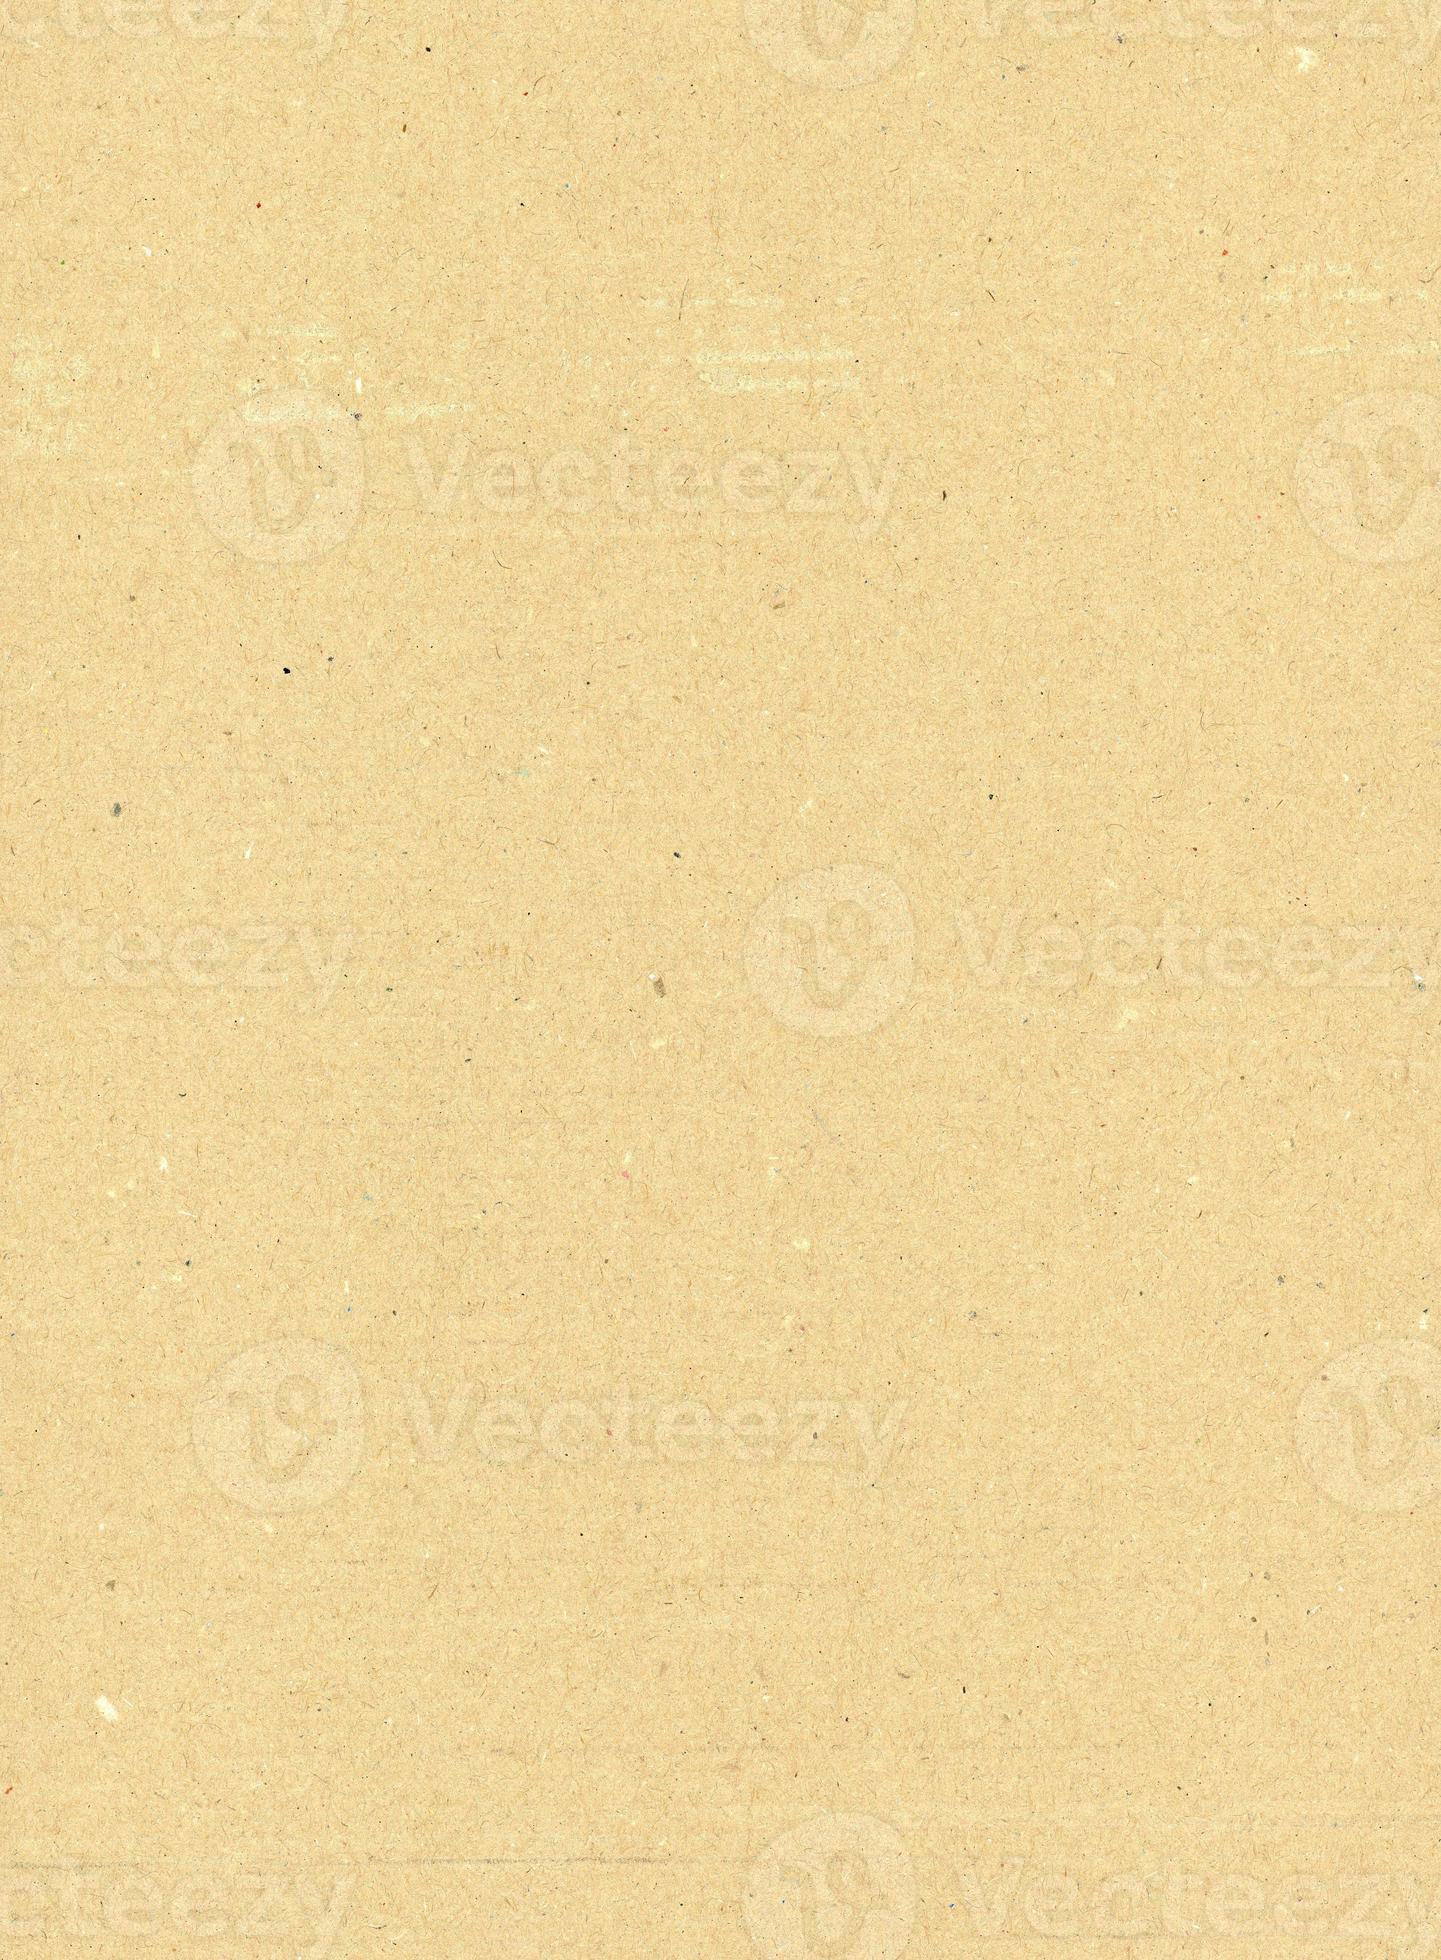 Wellpappe Textur Hintergrund foto